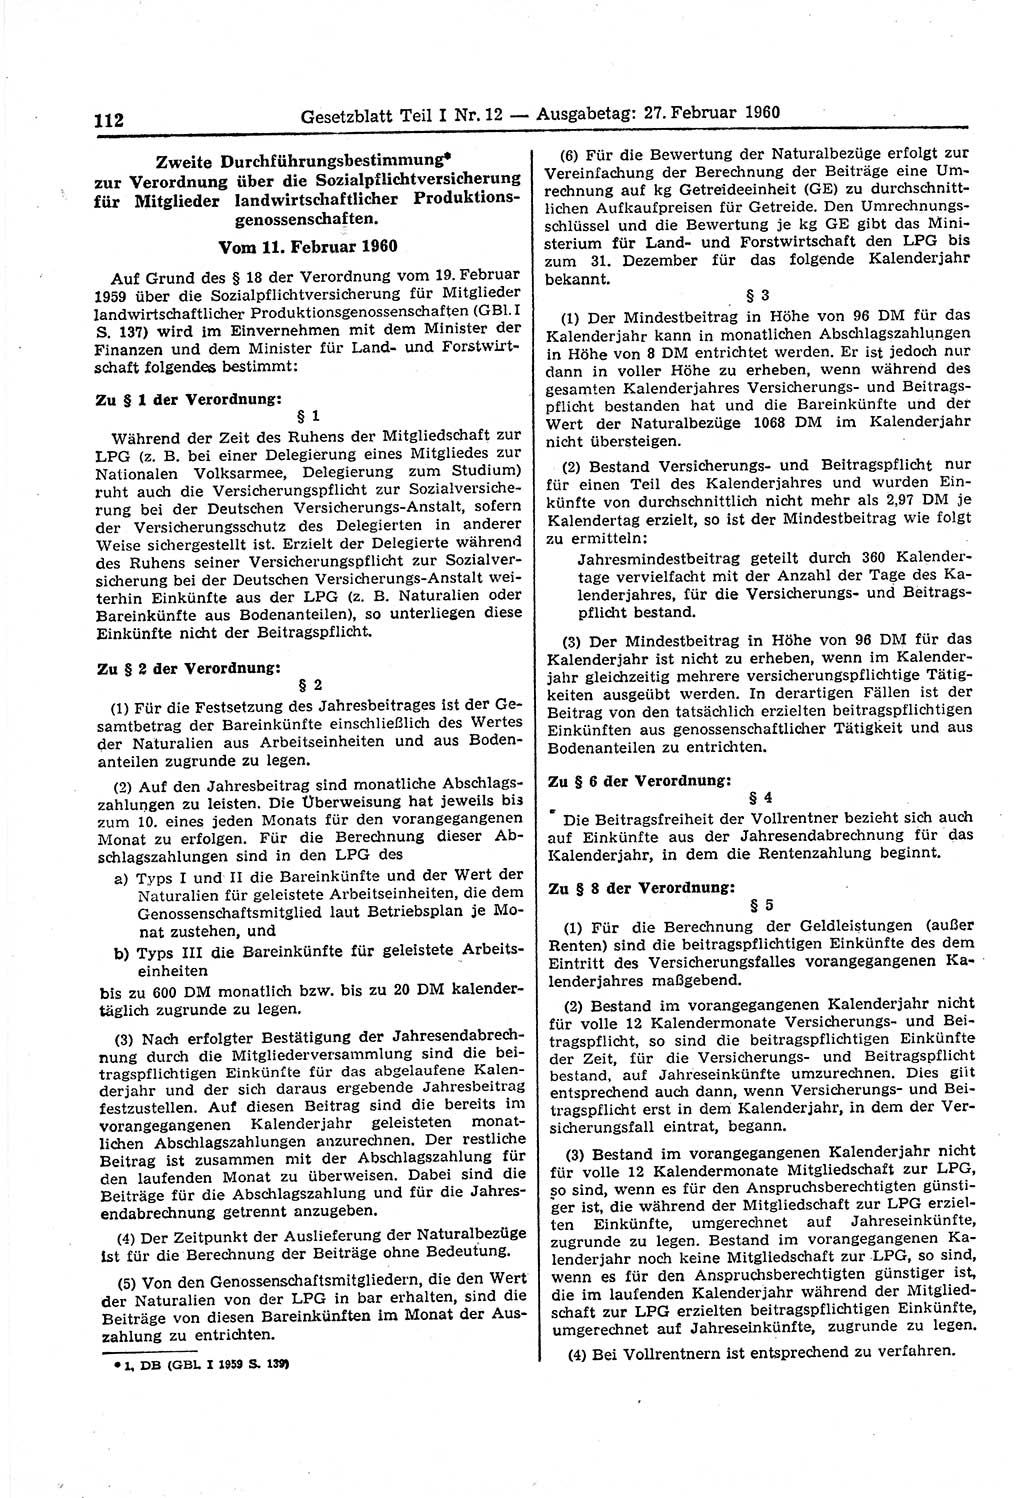 Gesetzblatt (GBl.) der Deutschen Demokratischen Republik (DDR) Teil Ⅰ 1960, Seite 112 (GBl. DDR Ⅰ 1960, S. 112)